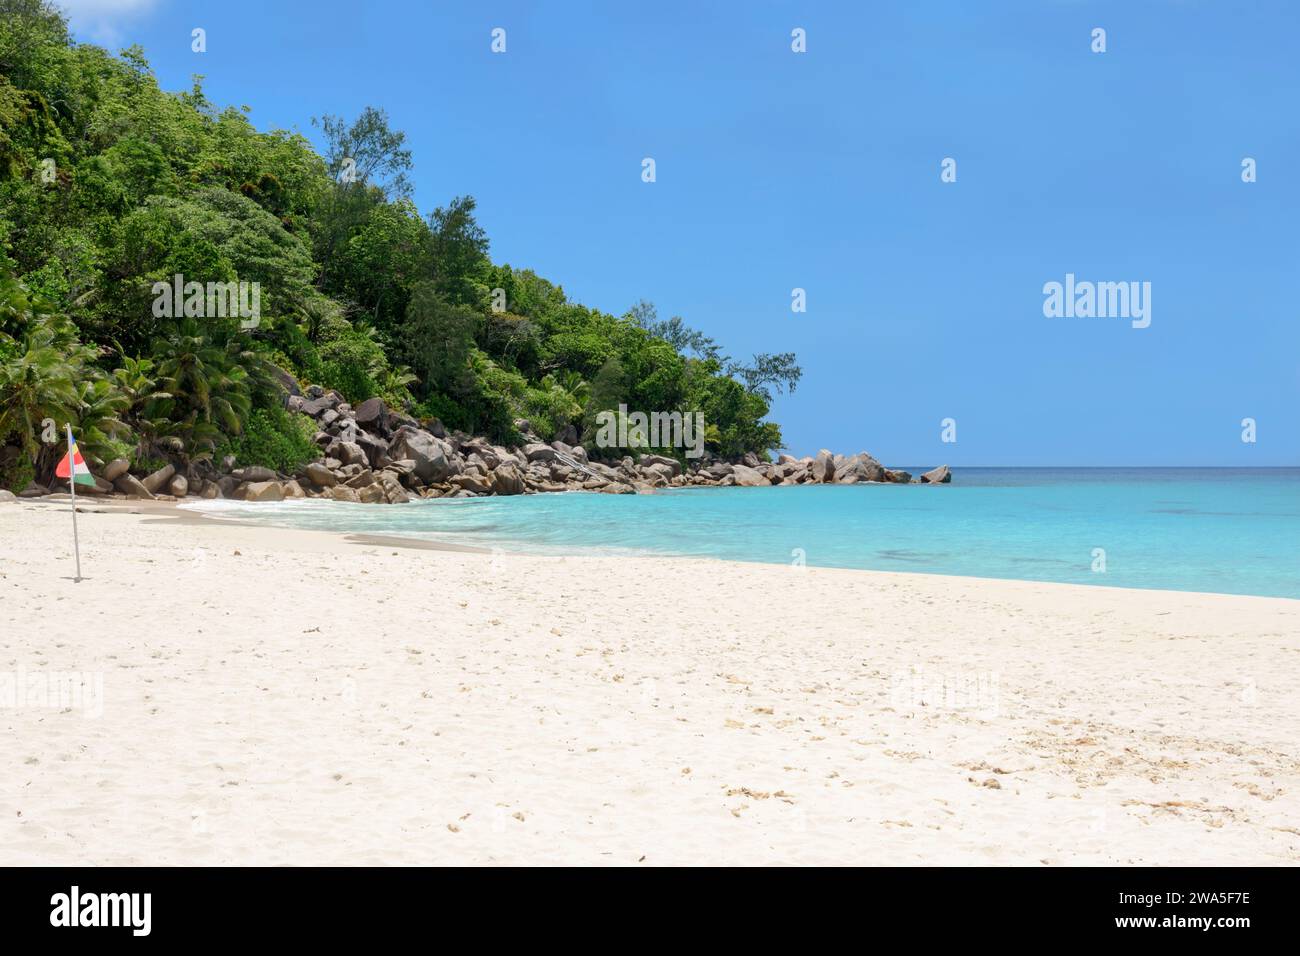 Plage d'Anse Georgette, île de Praslin, Seychelles, océan Indien Banque D'Images